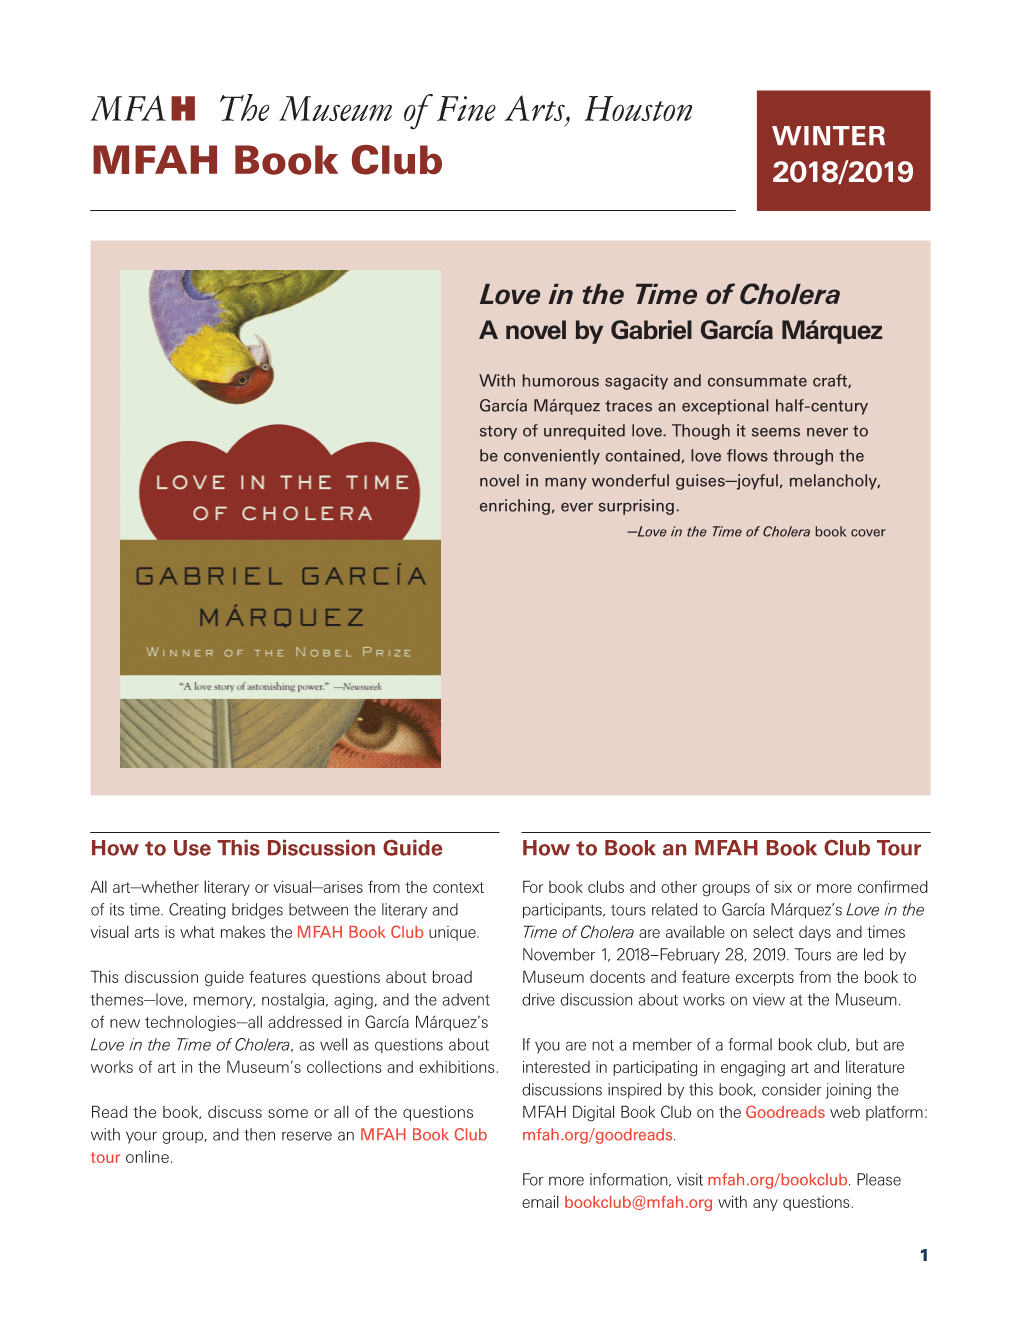 MFAH Book Club 2018/2019